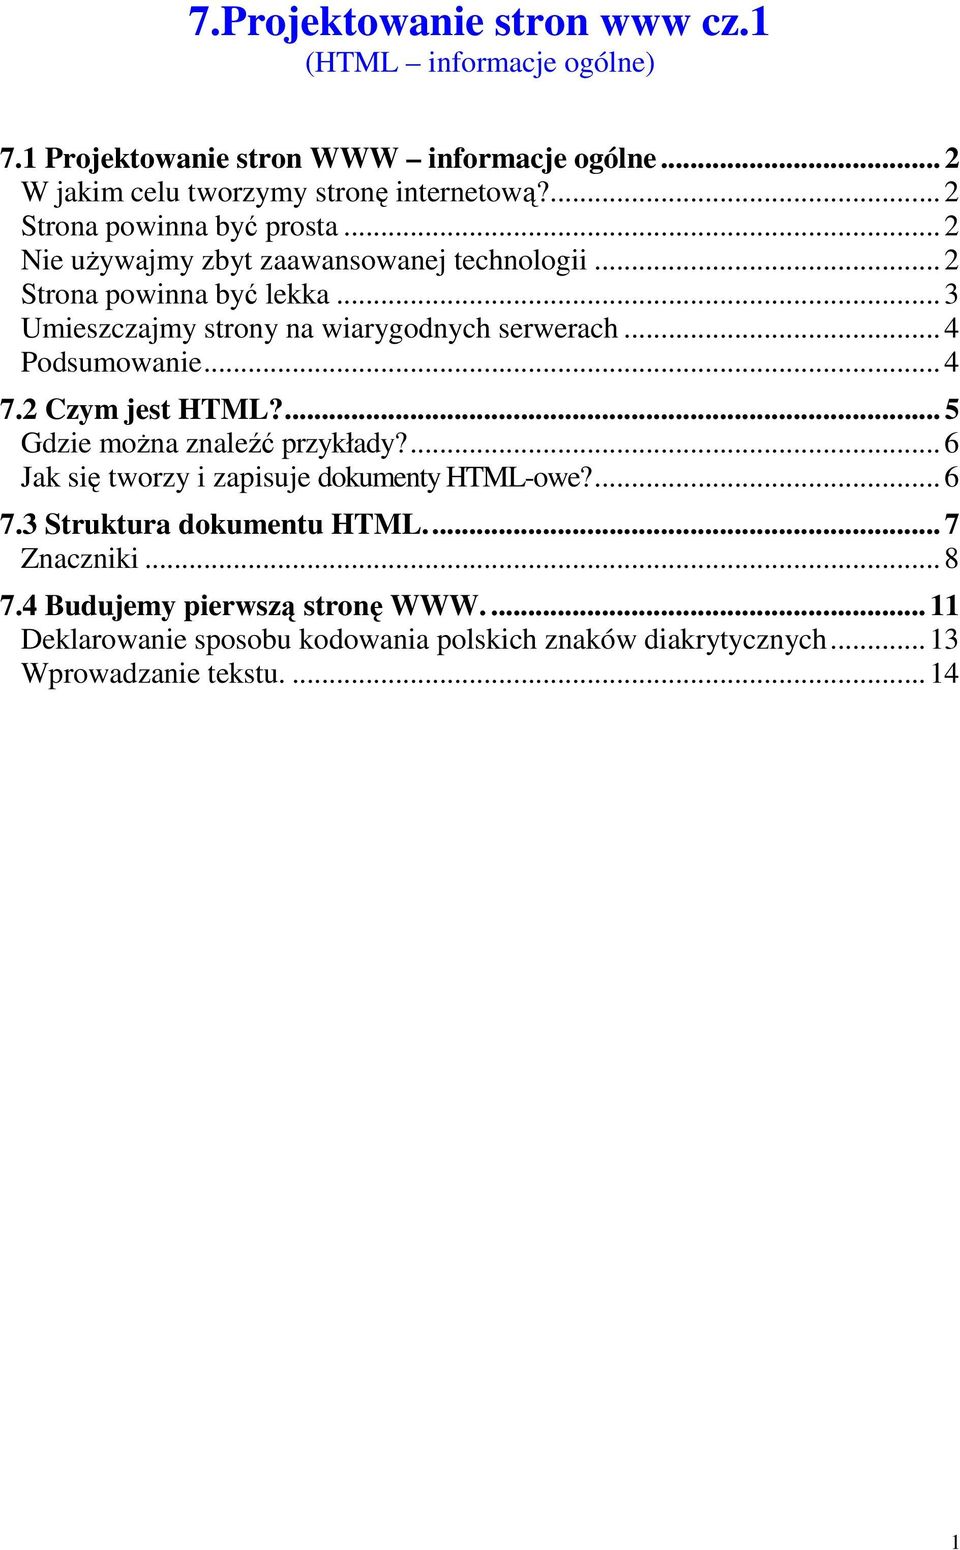 .. 3 Umieszczajmy strony na wiarygodnych serwerach... 4 Podsumowanie... 4 7.2 Czym jest HTML?... 5 Gdzie moŝna znaleźć przykłady?